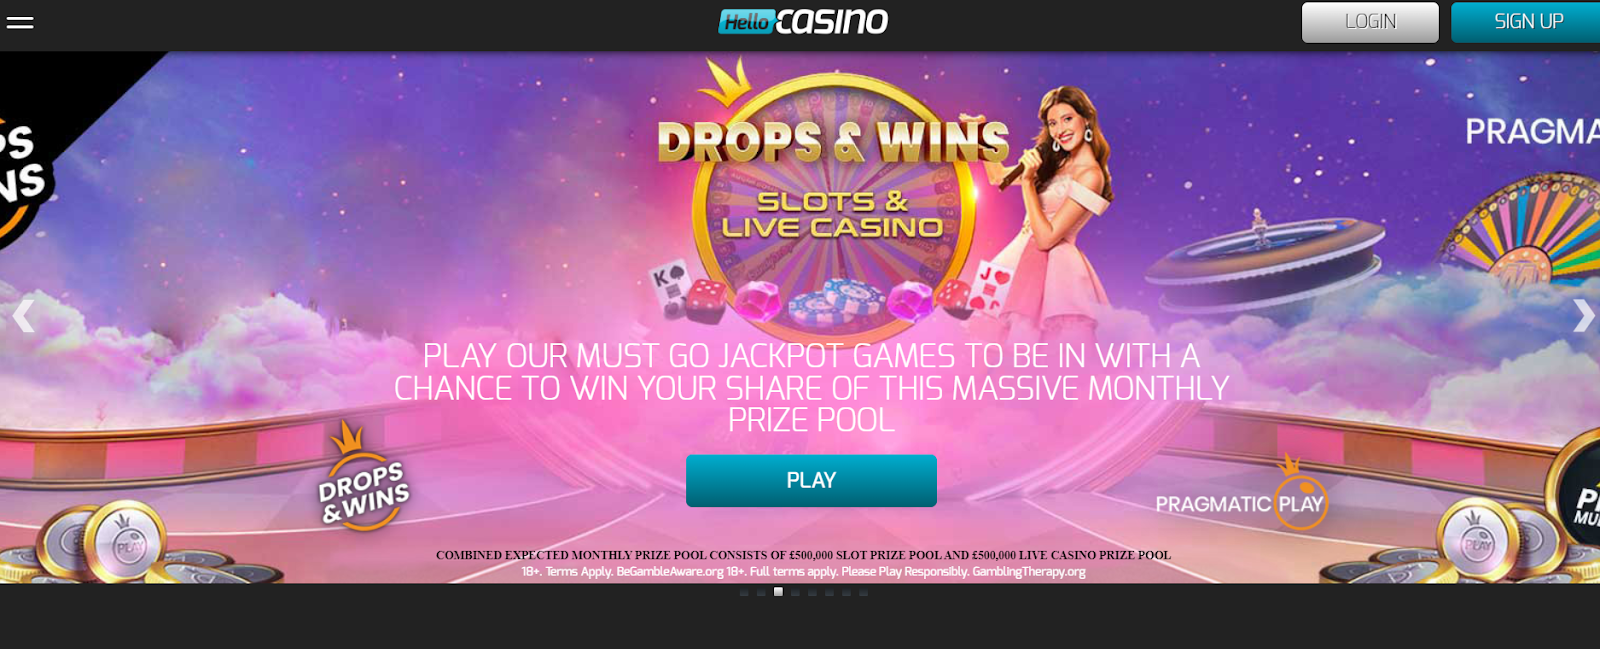 Hello Casino Overview